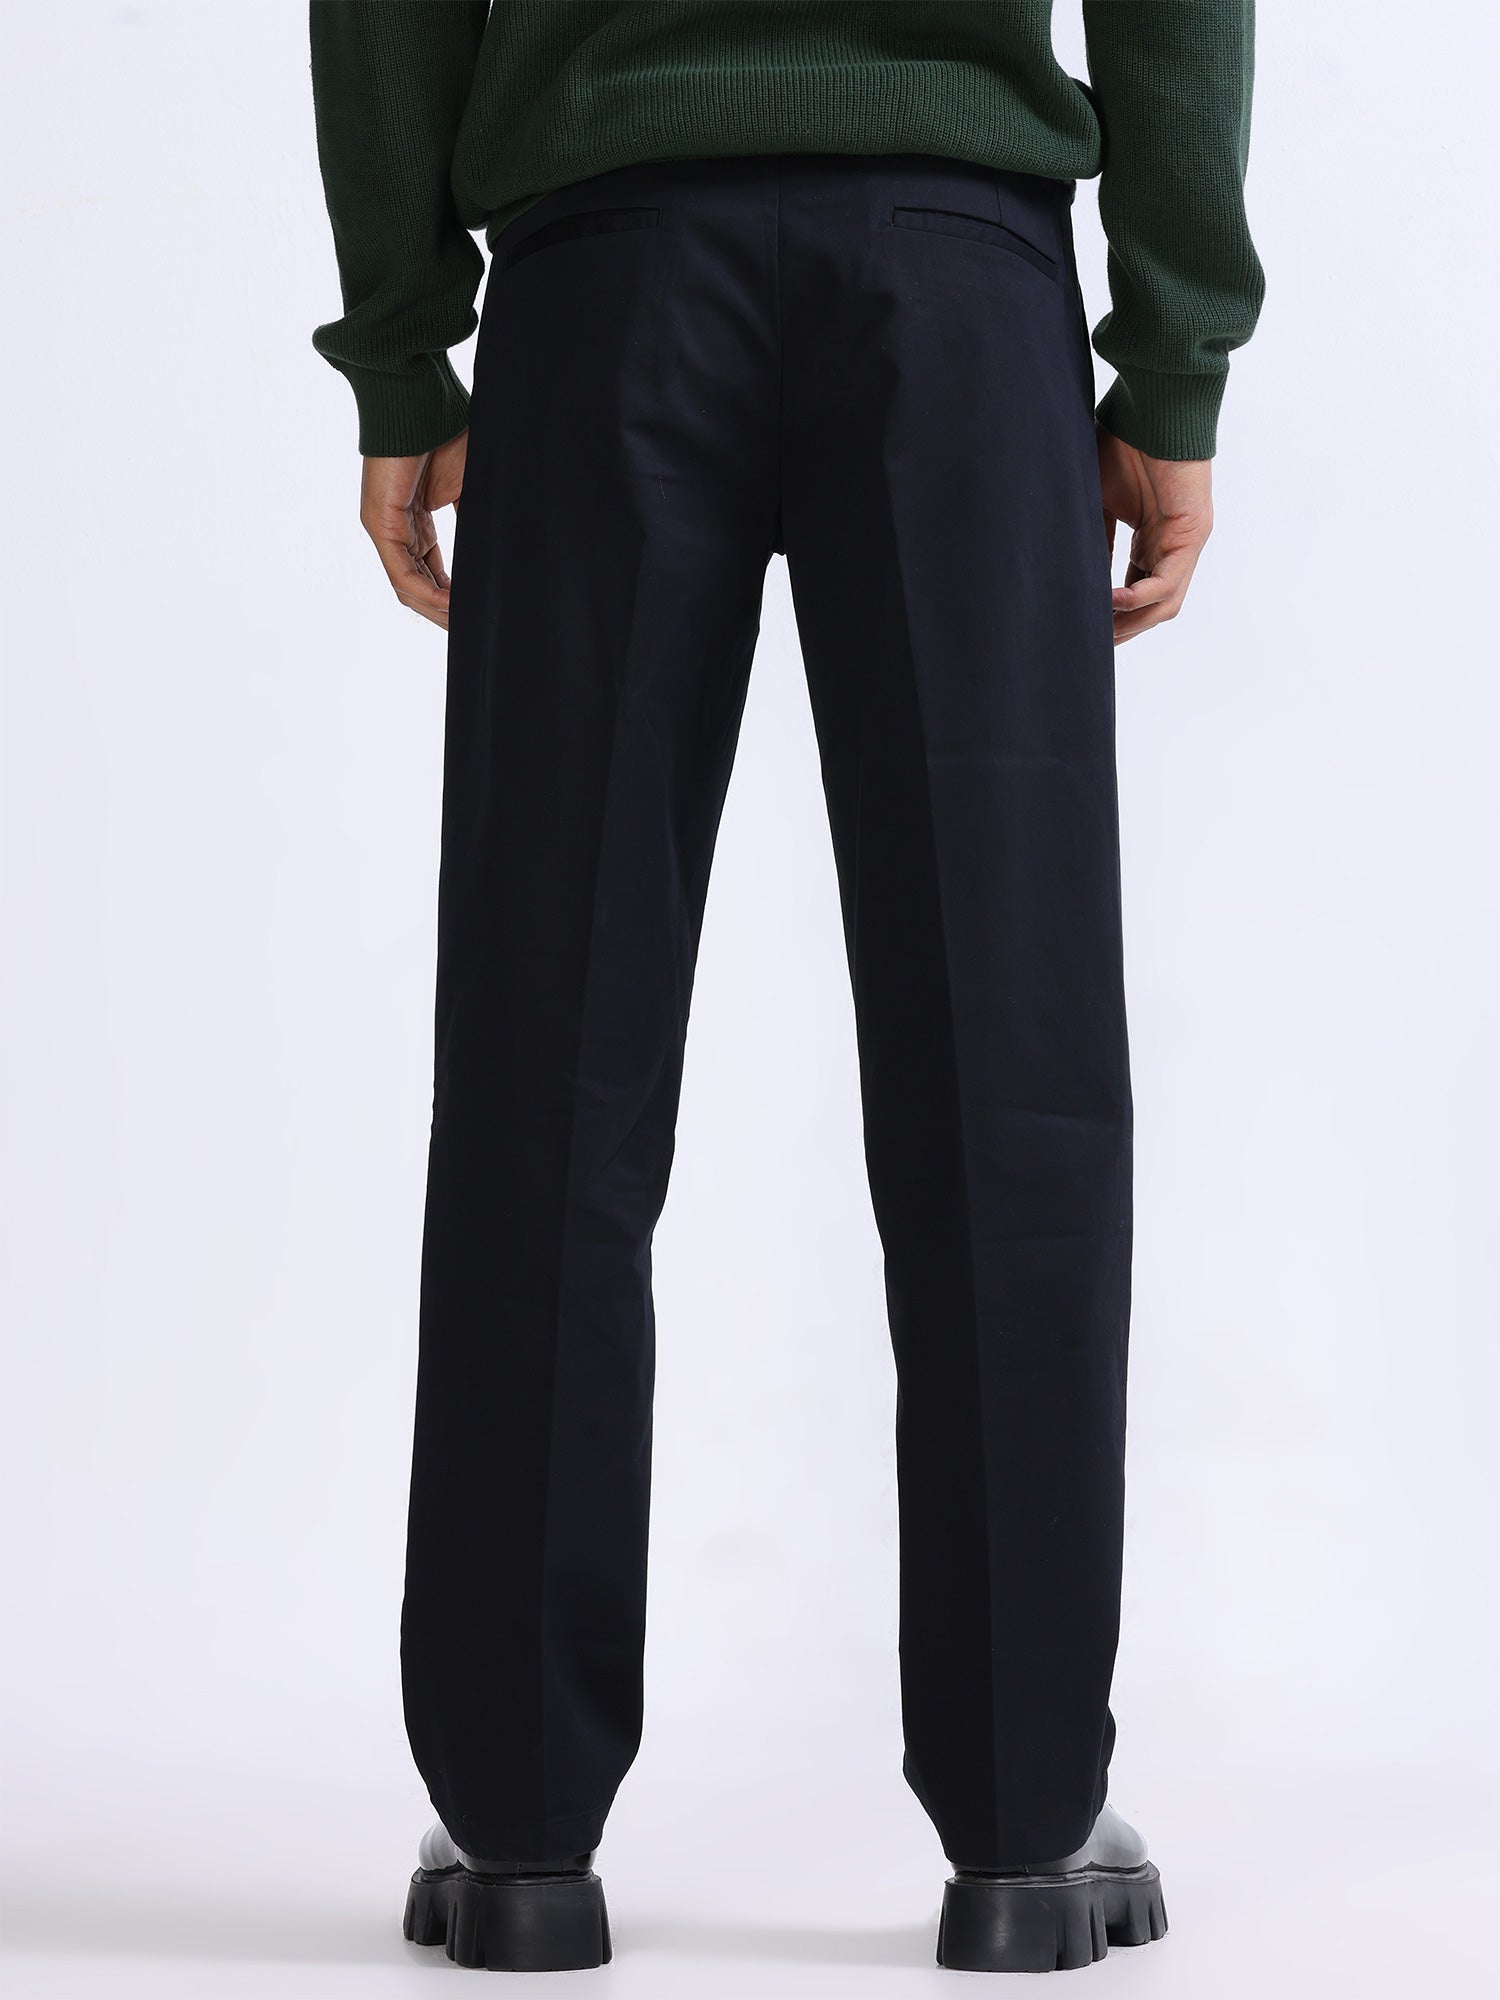 Sengaar Slim Fit Men Black Trousers - Buy Sengaar Slim Fit Men Black  Trousers Online at Best Prices in India | Flipkart.com